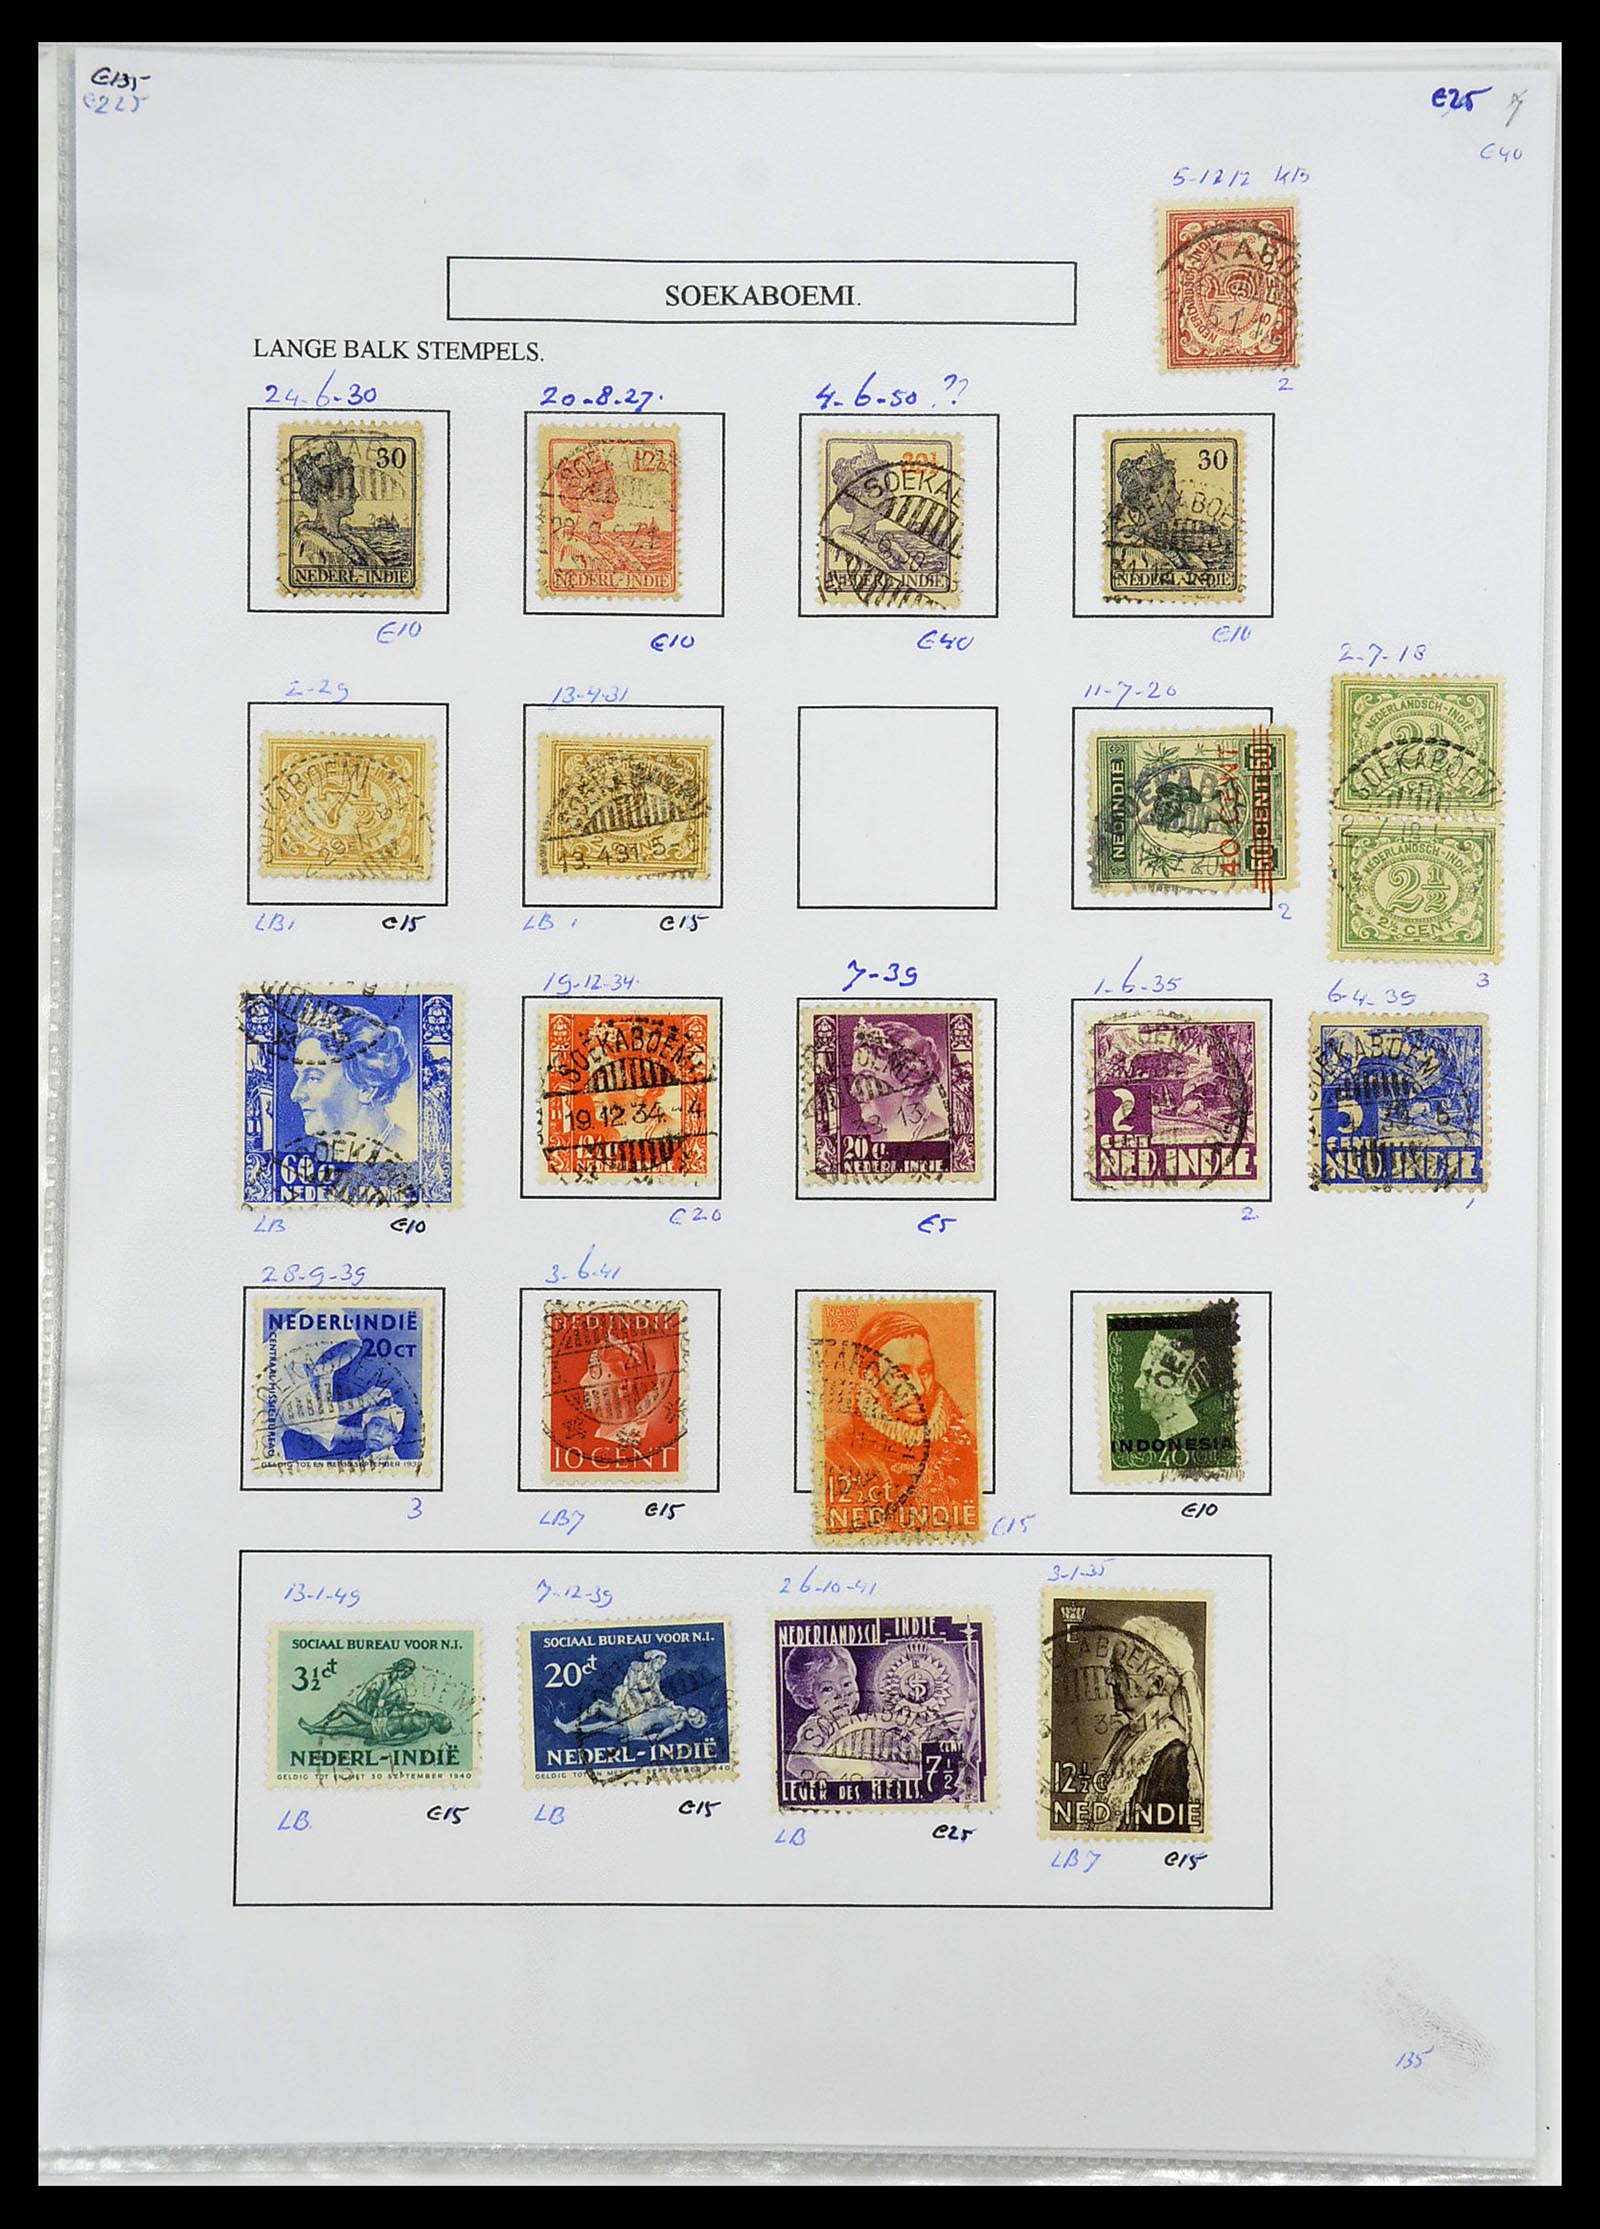 34693 349 - Postzegelverzameling 34693 Nederlands Indië stempels 1917-1948.